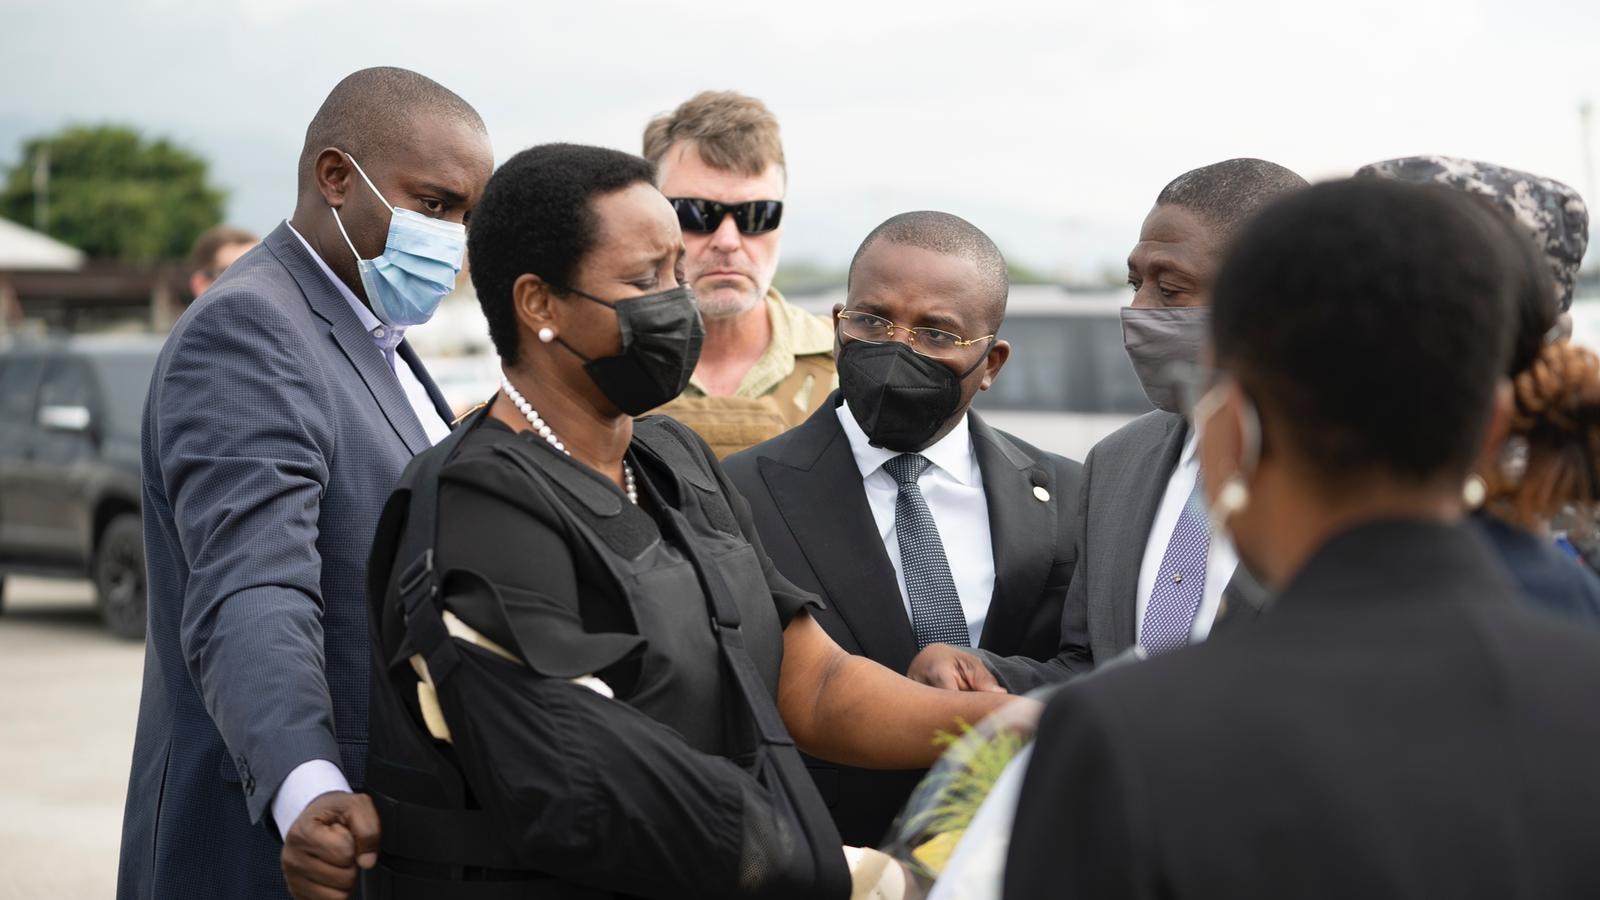 Επέστρεψε στην Αϊτή η χήρα του δολοφονημένου προέδρου – Θα παραστεί στην κηδεία του συζύγου της